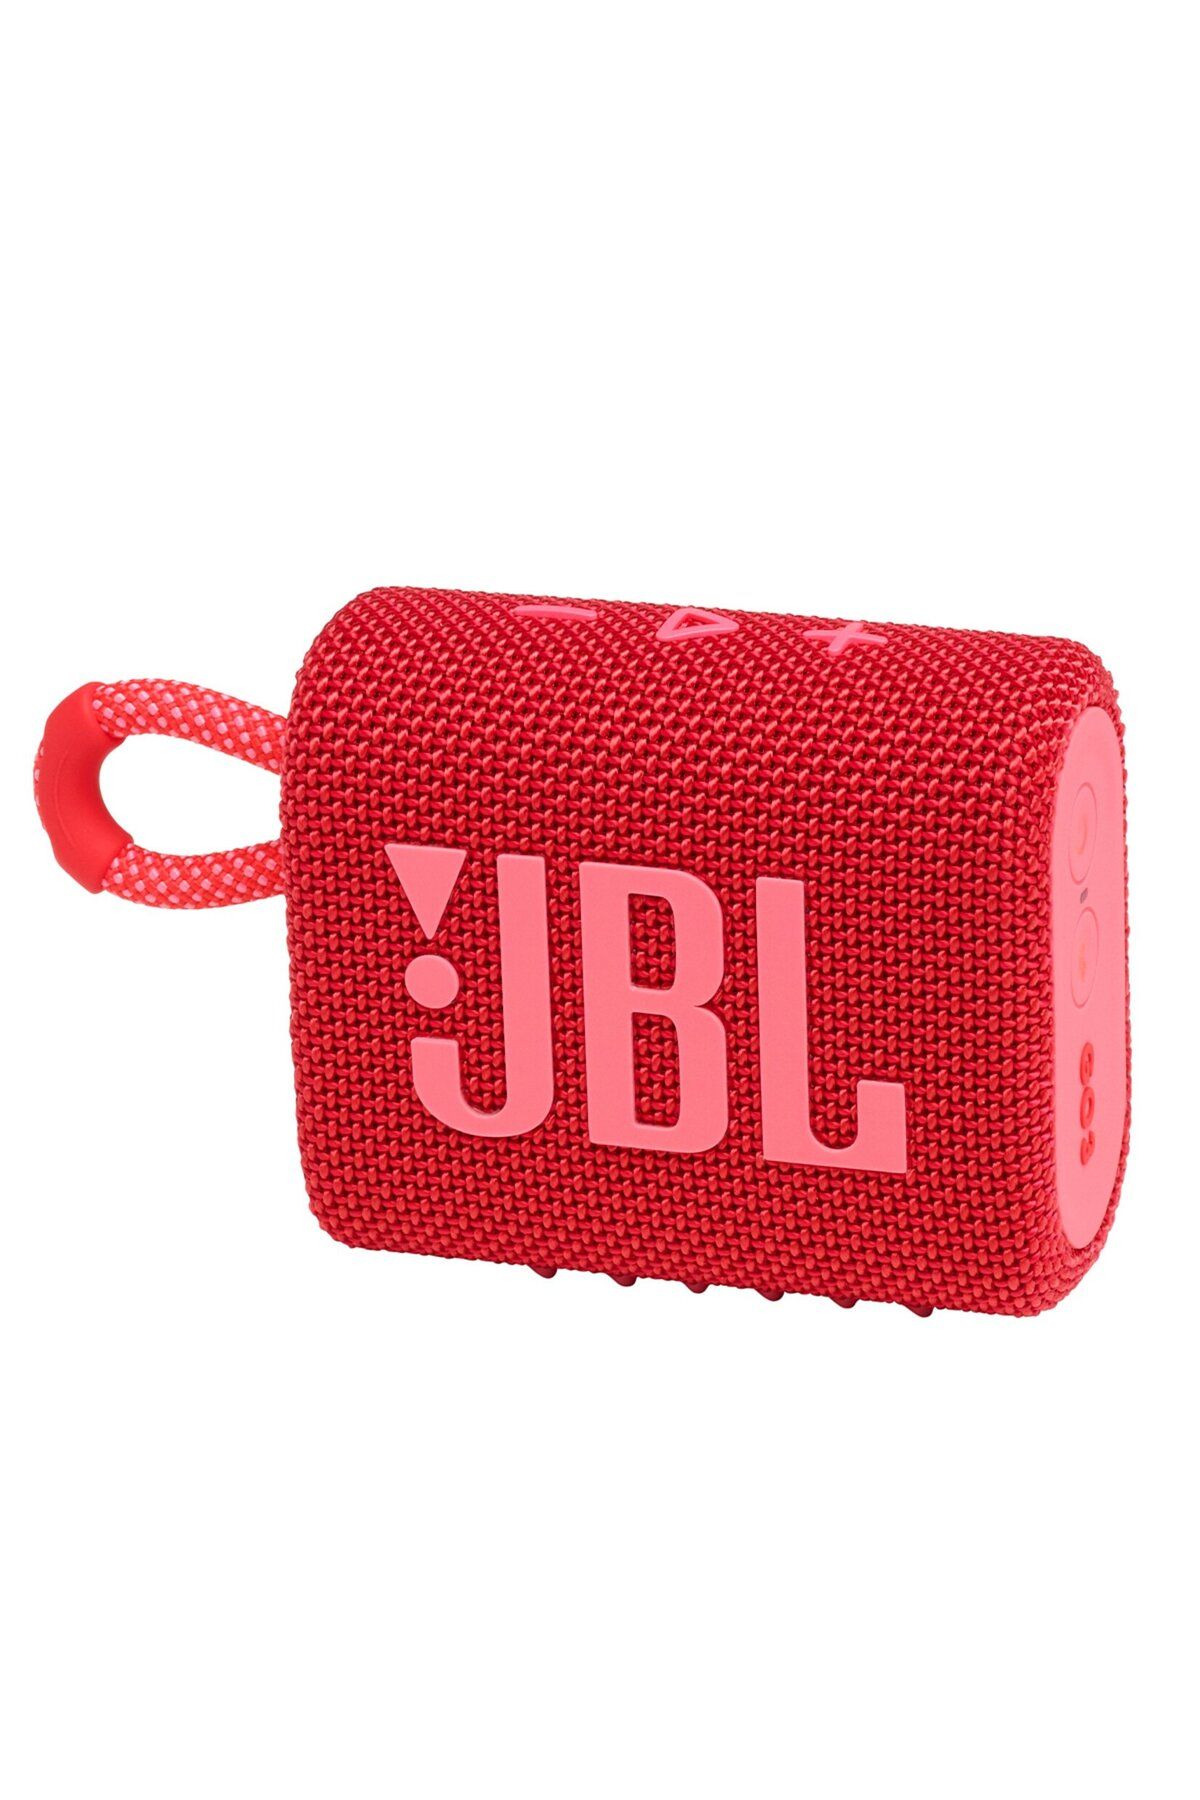 JBL Go 3 Taşınabilir Su Geçirmez Bluetooth Hoparlör Kırmızı